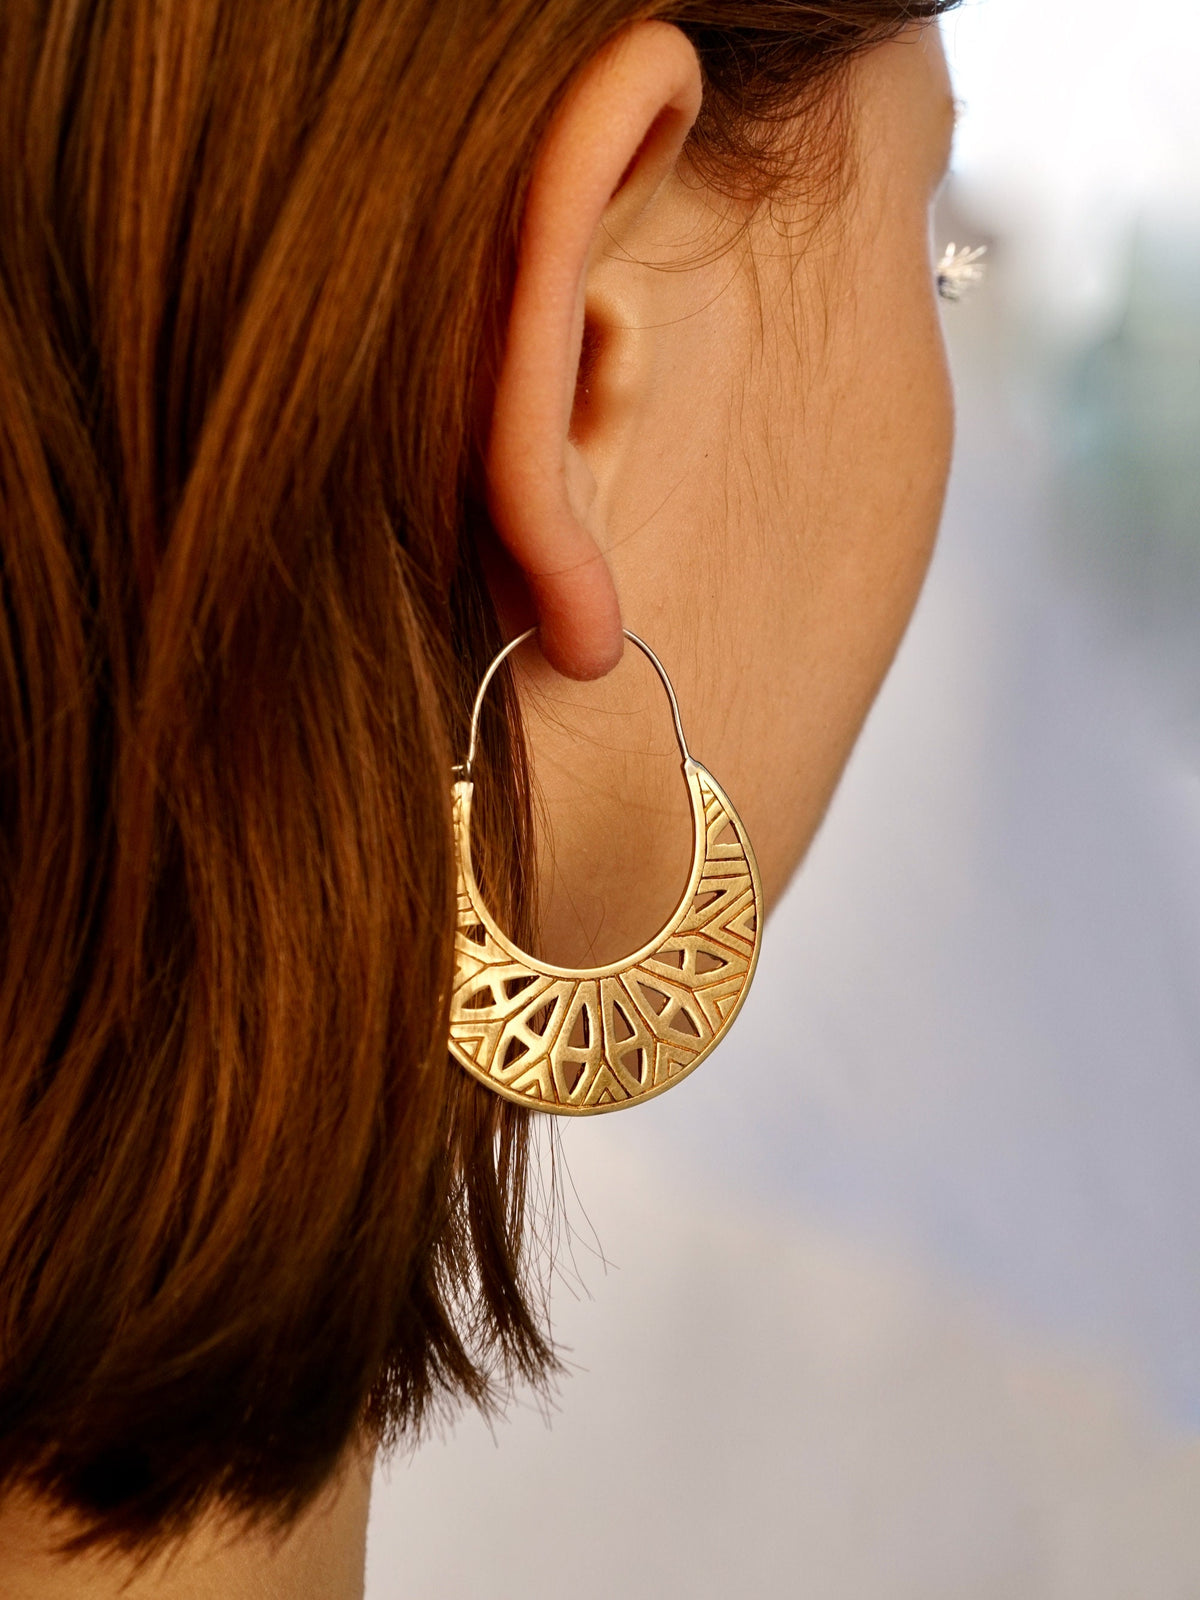 Mandala Moon Earrings - Medium Crescent Moon Hoops - (288B)